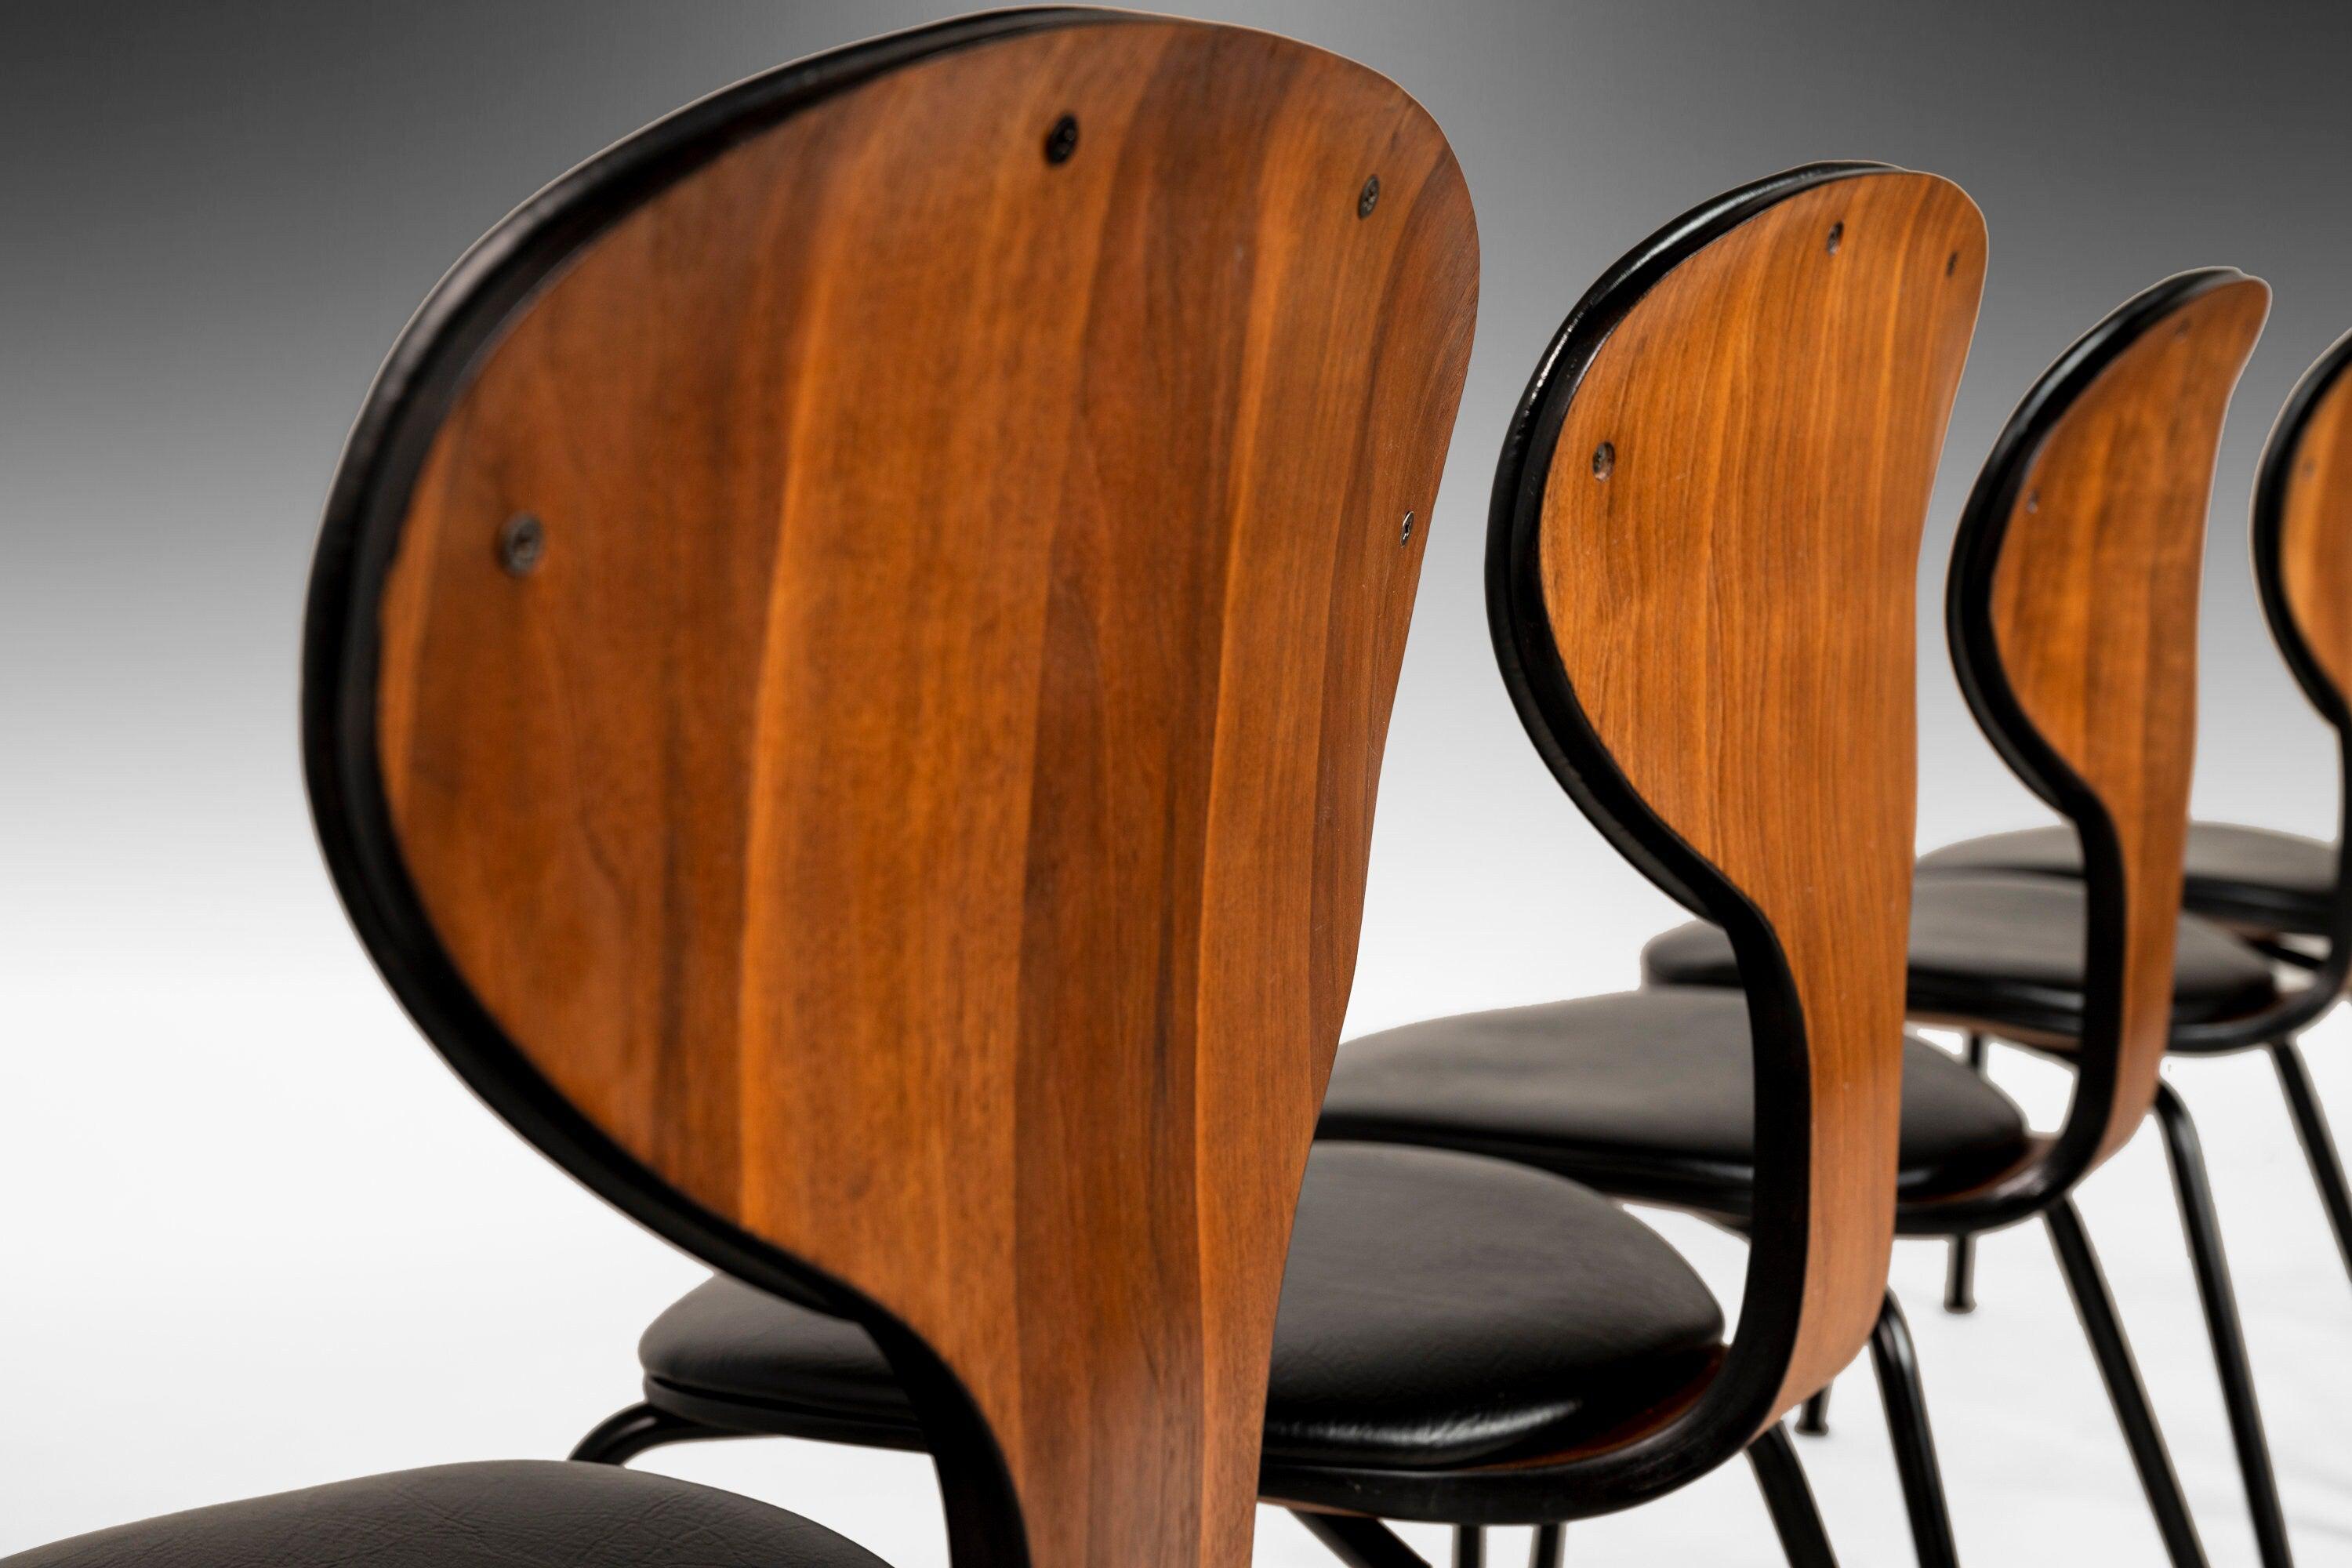 Diese außergewöhnlichen Stühle, die 1958 vom legendären Norman Cherner entworfen wurden, sind ebenso selten wie atemberaubend. Sie wurden vor kurzem umfassend restauriert und geben dem klassischen Design eine moderne Note. Norman Cherner, der als